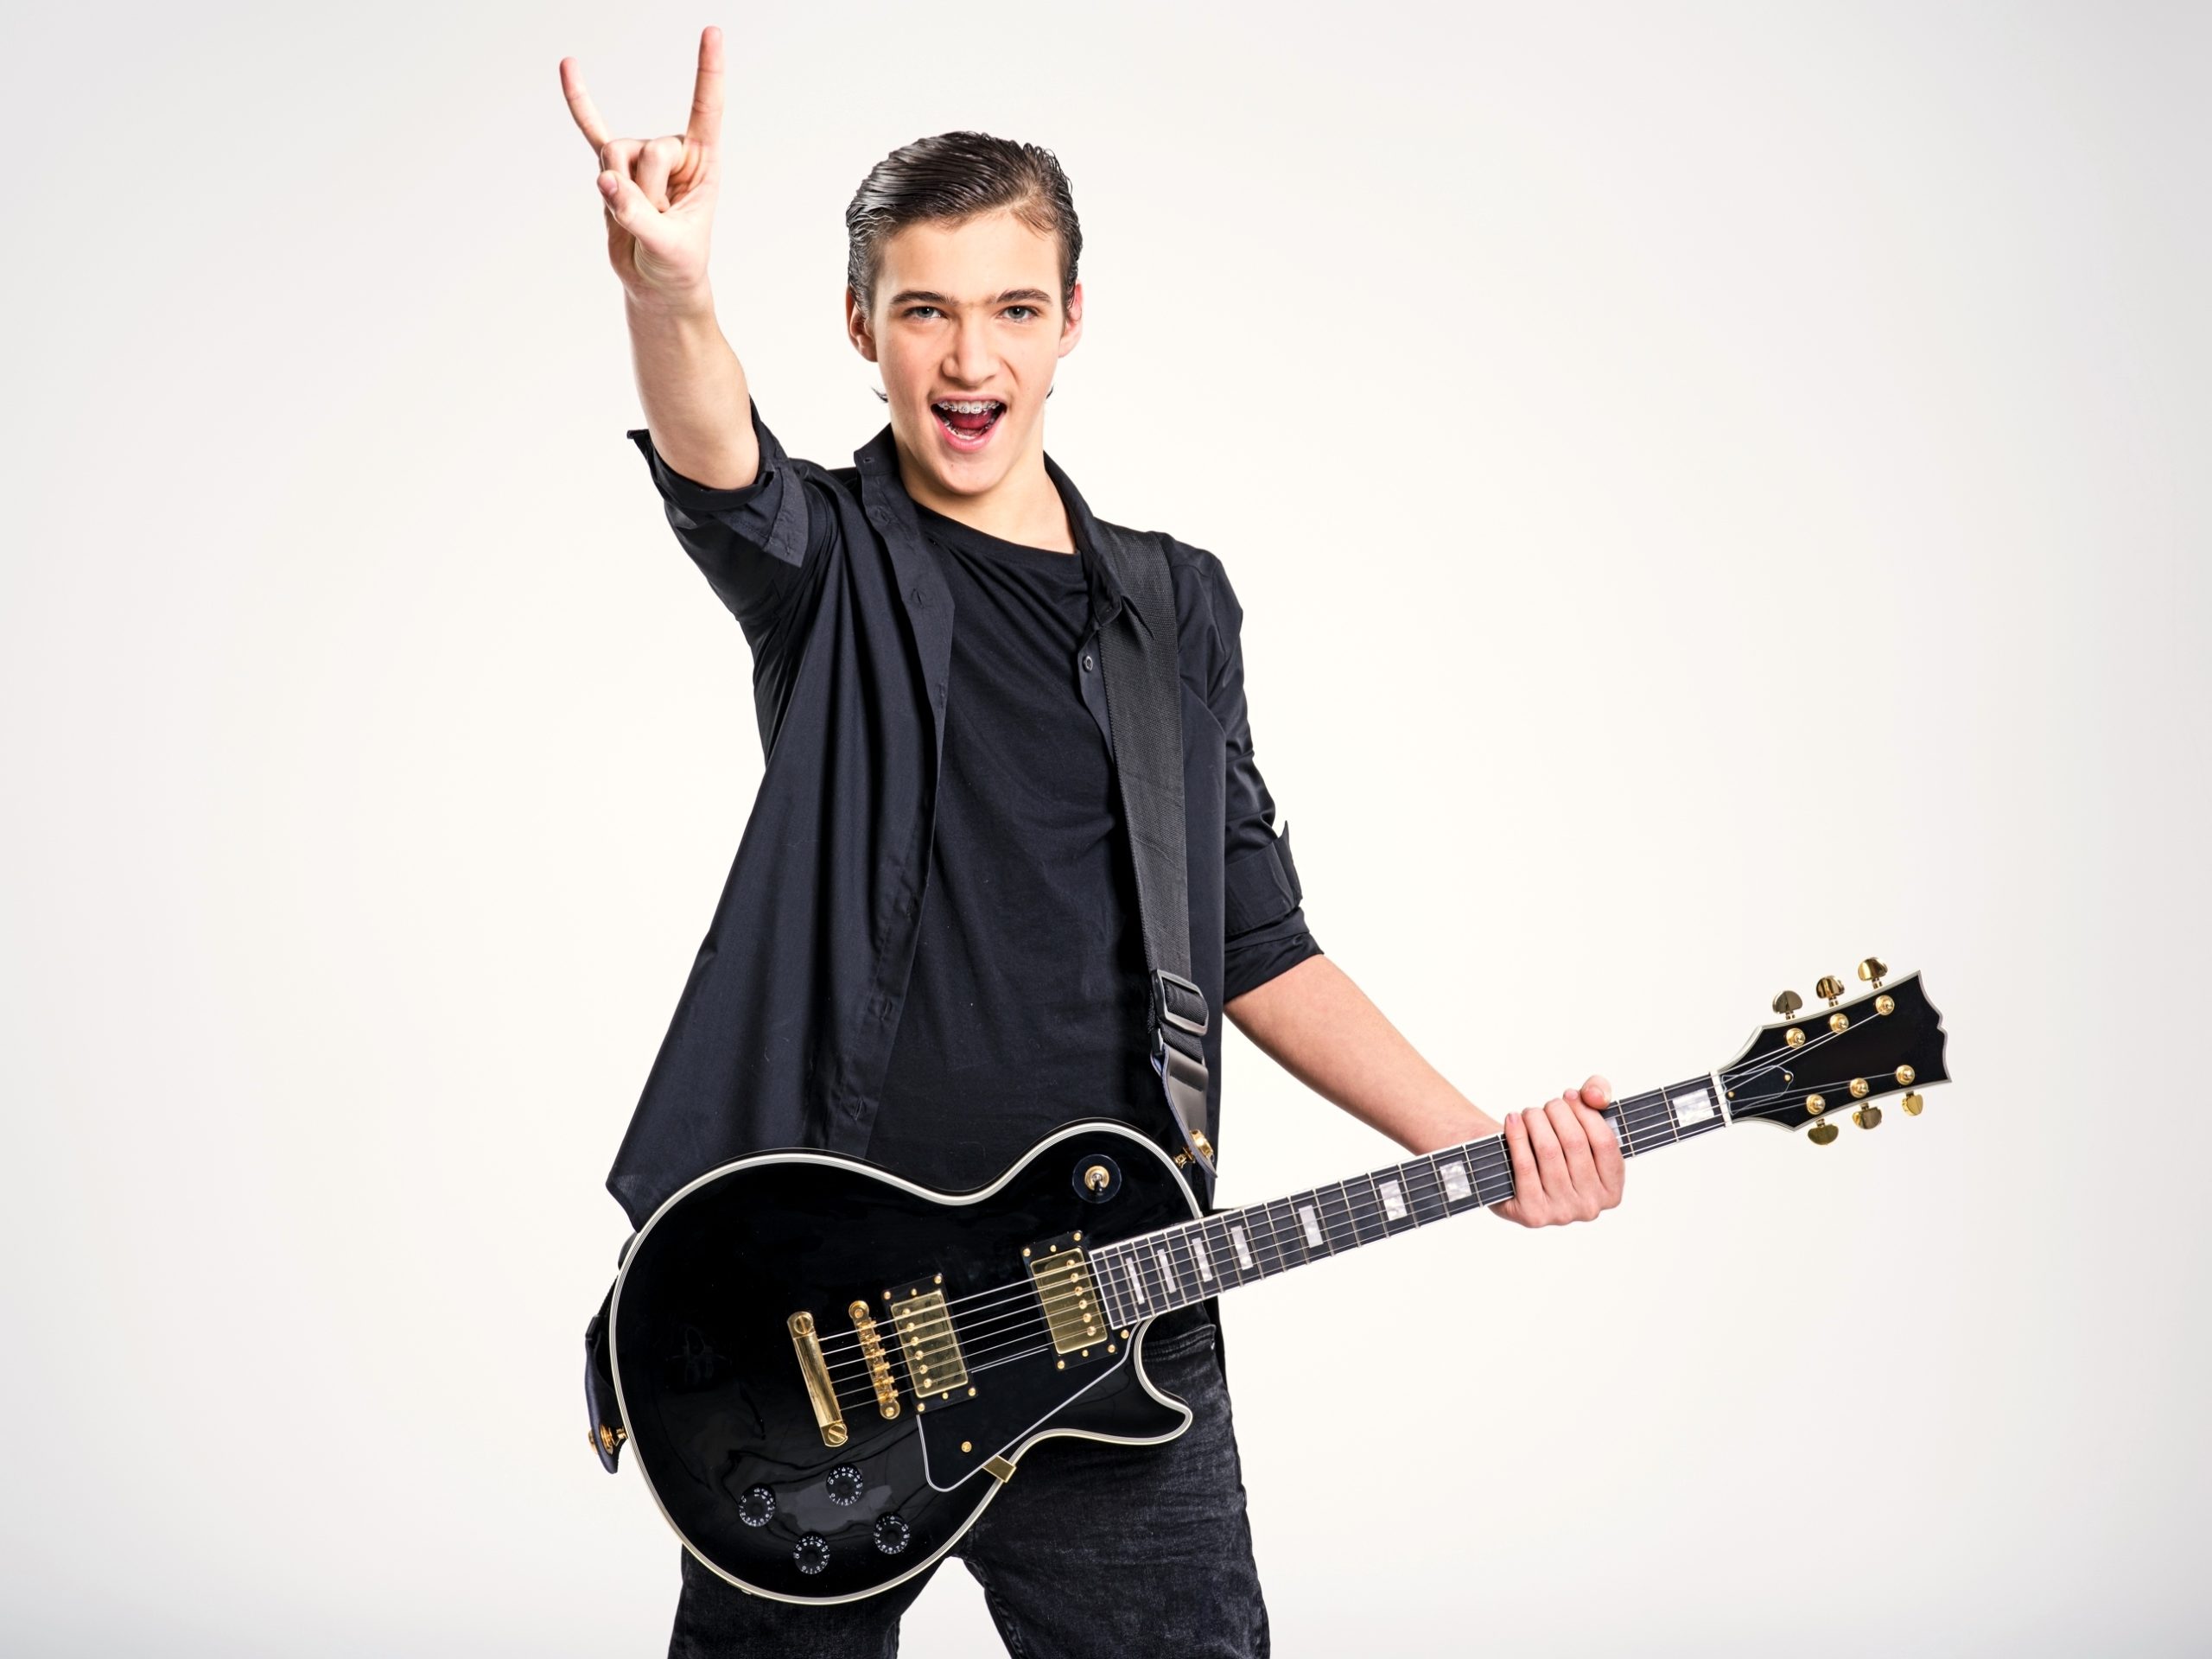 Música y adolescentes: Cómo les influye el metal o el rock